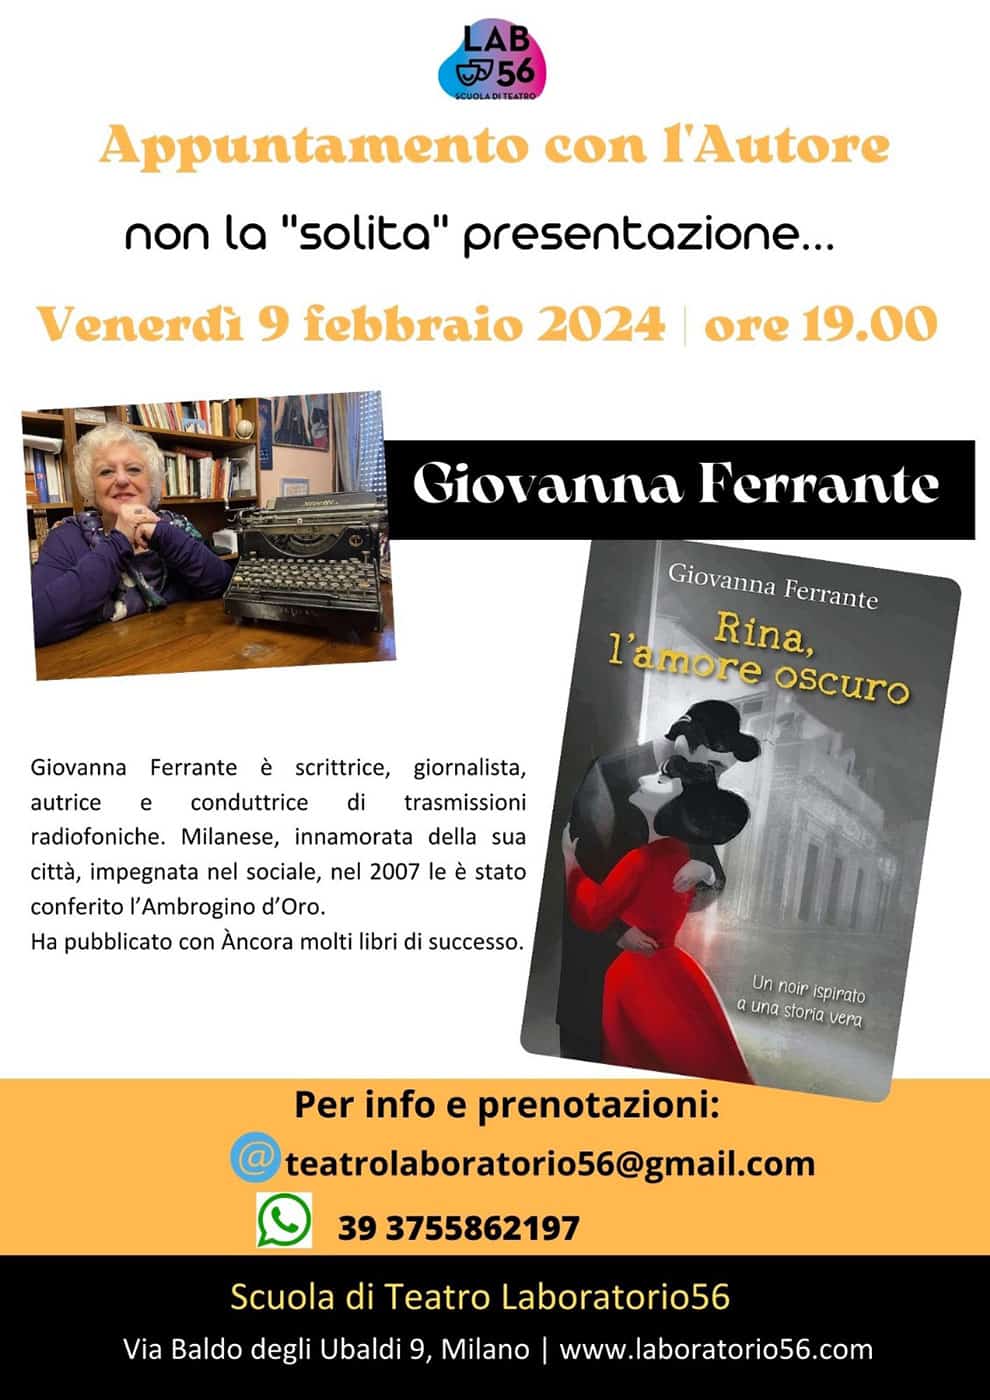 Appuntamento con Giovanna Ferrante